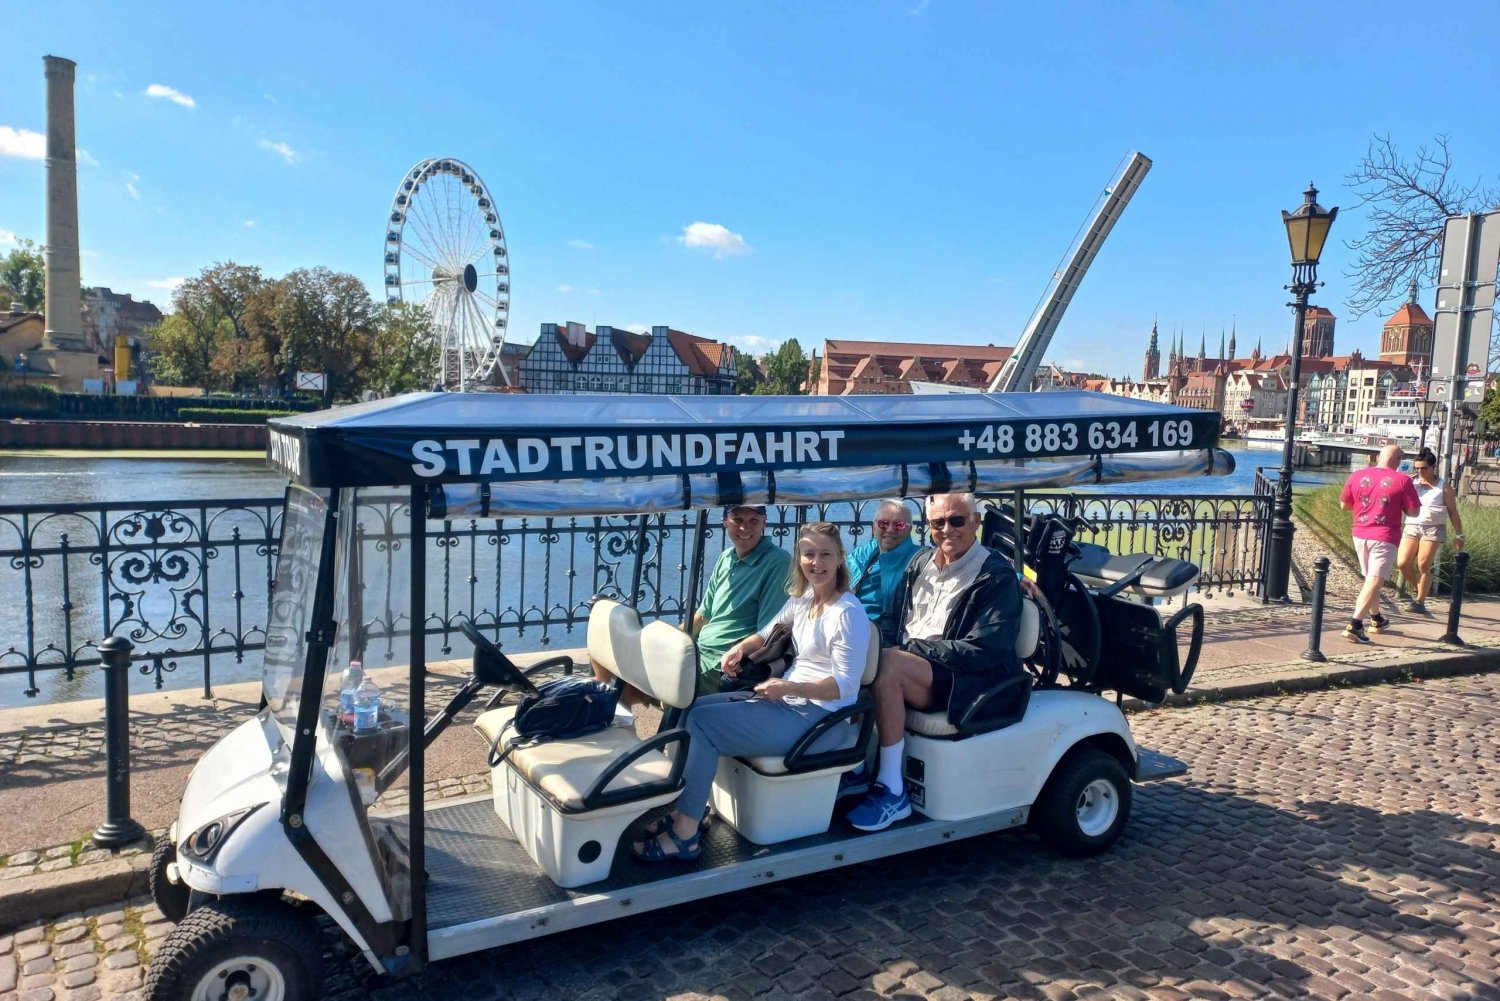 Danzica: Tour privato della città con carrello elettrico e guida dal vivo